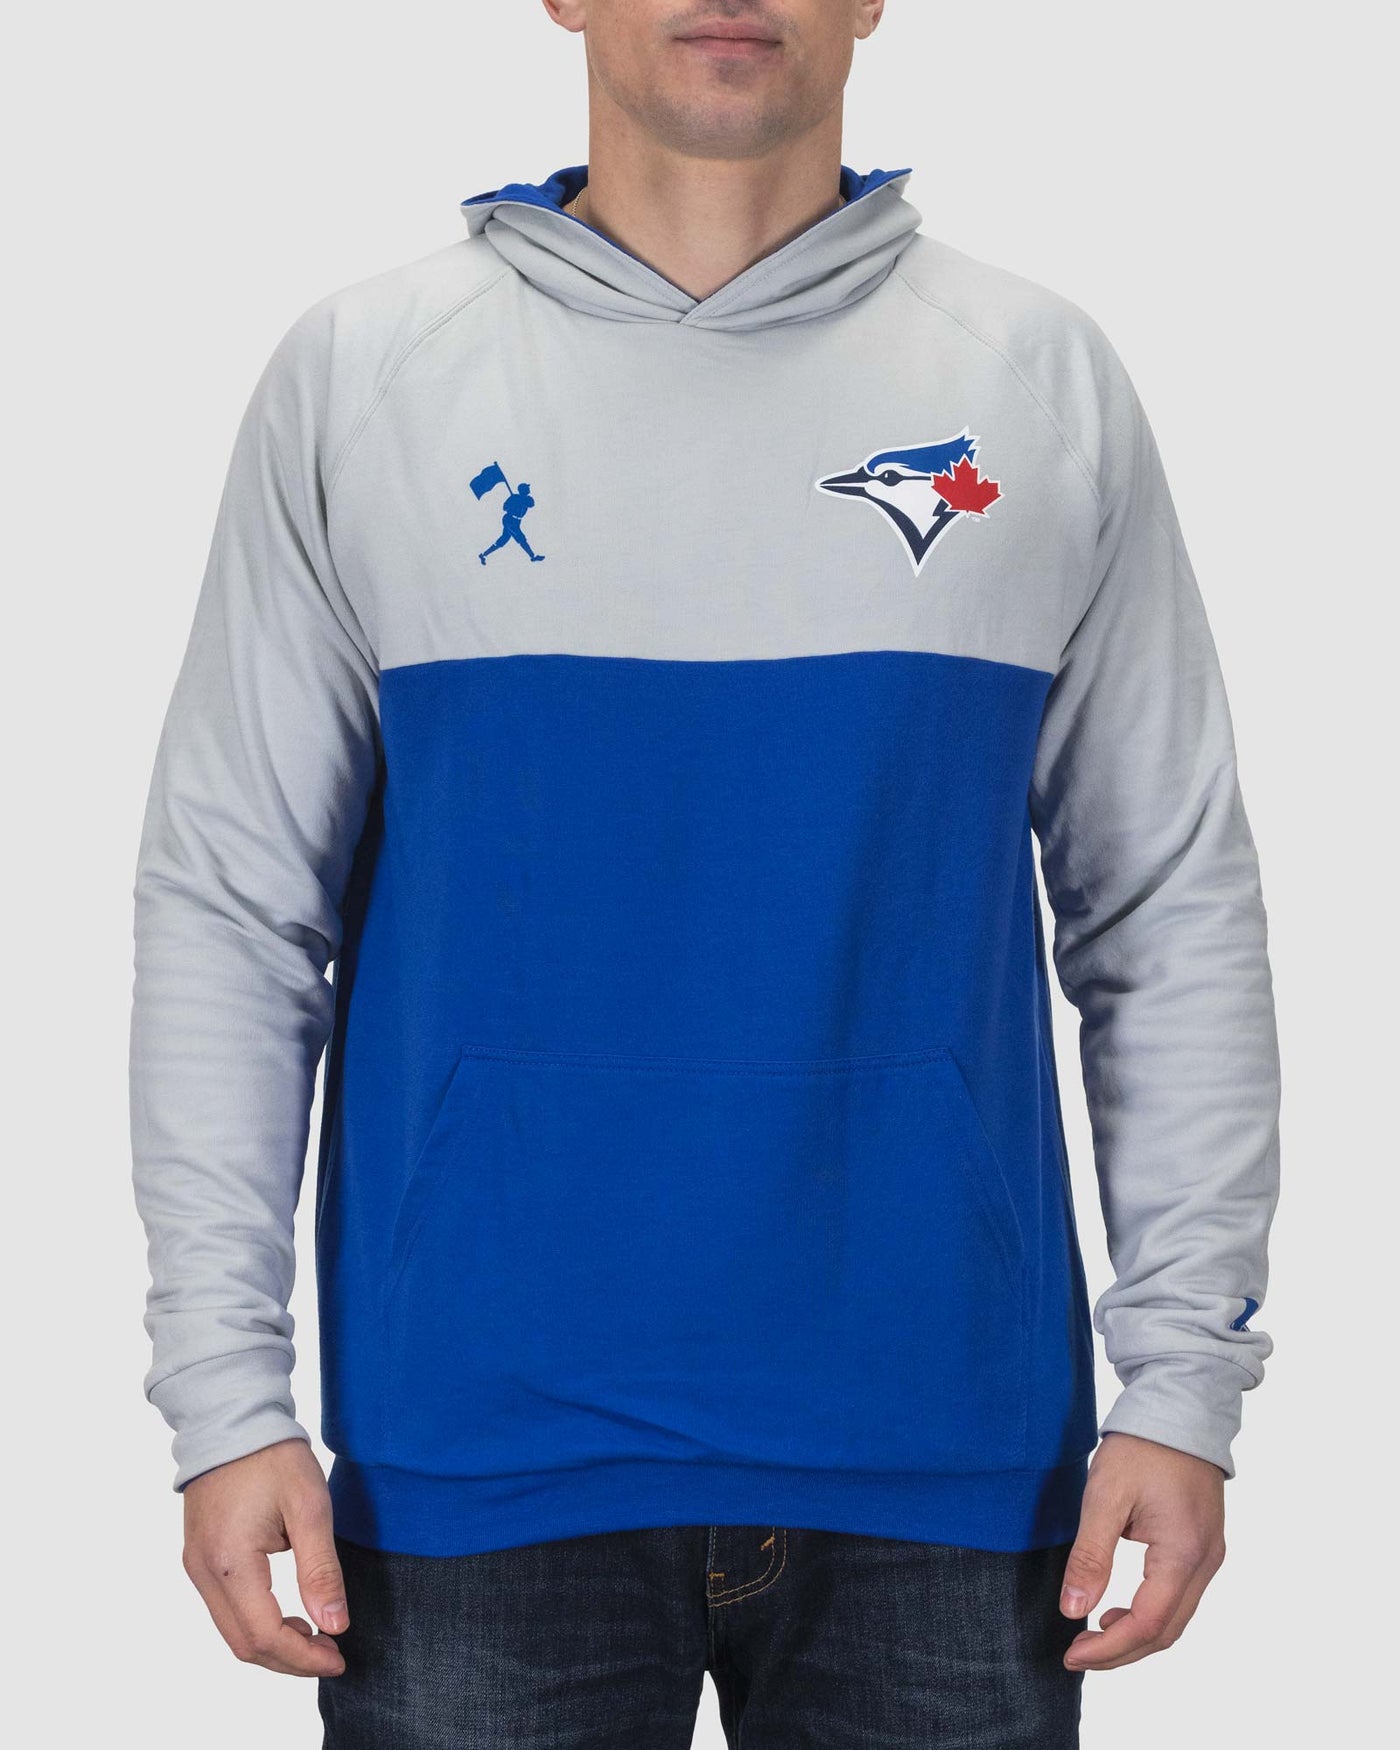 Toronto Blue Jays Size 3XL MLB Jerseys for sale